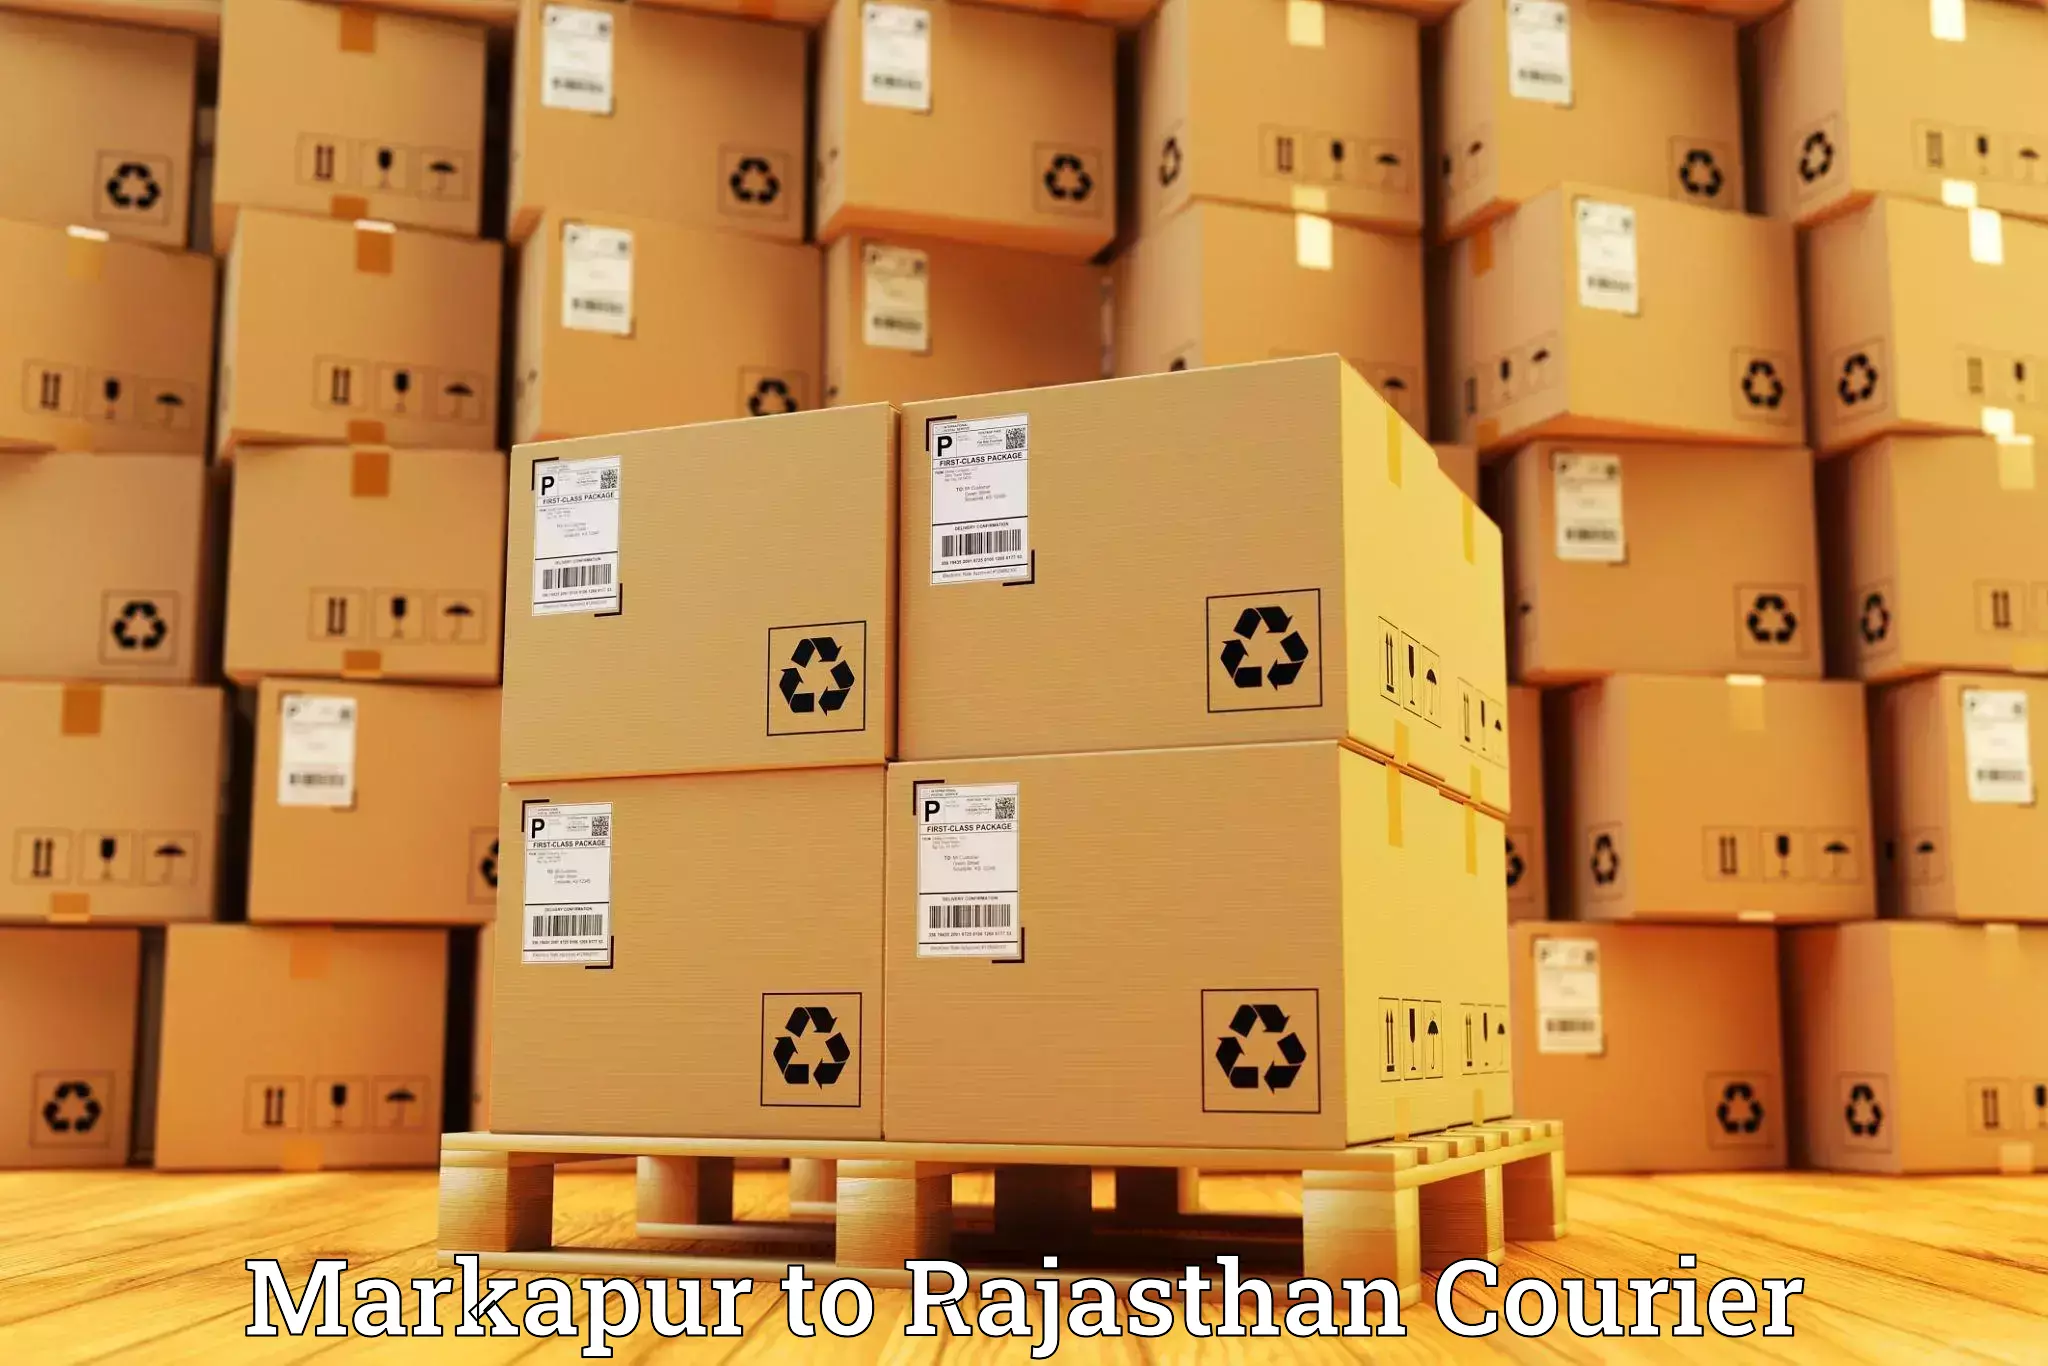 Global shipping networks Markapur to Deshnok